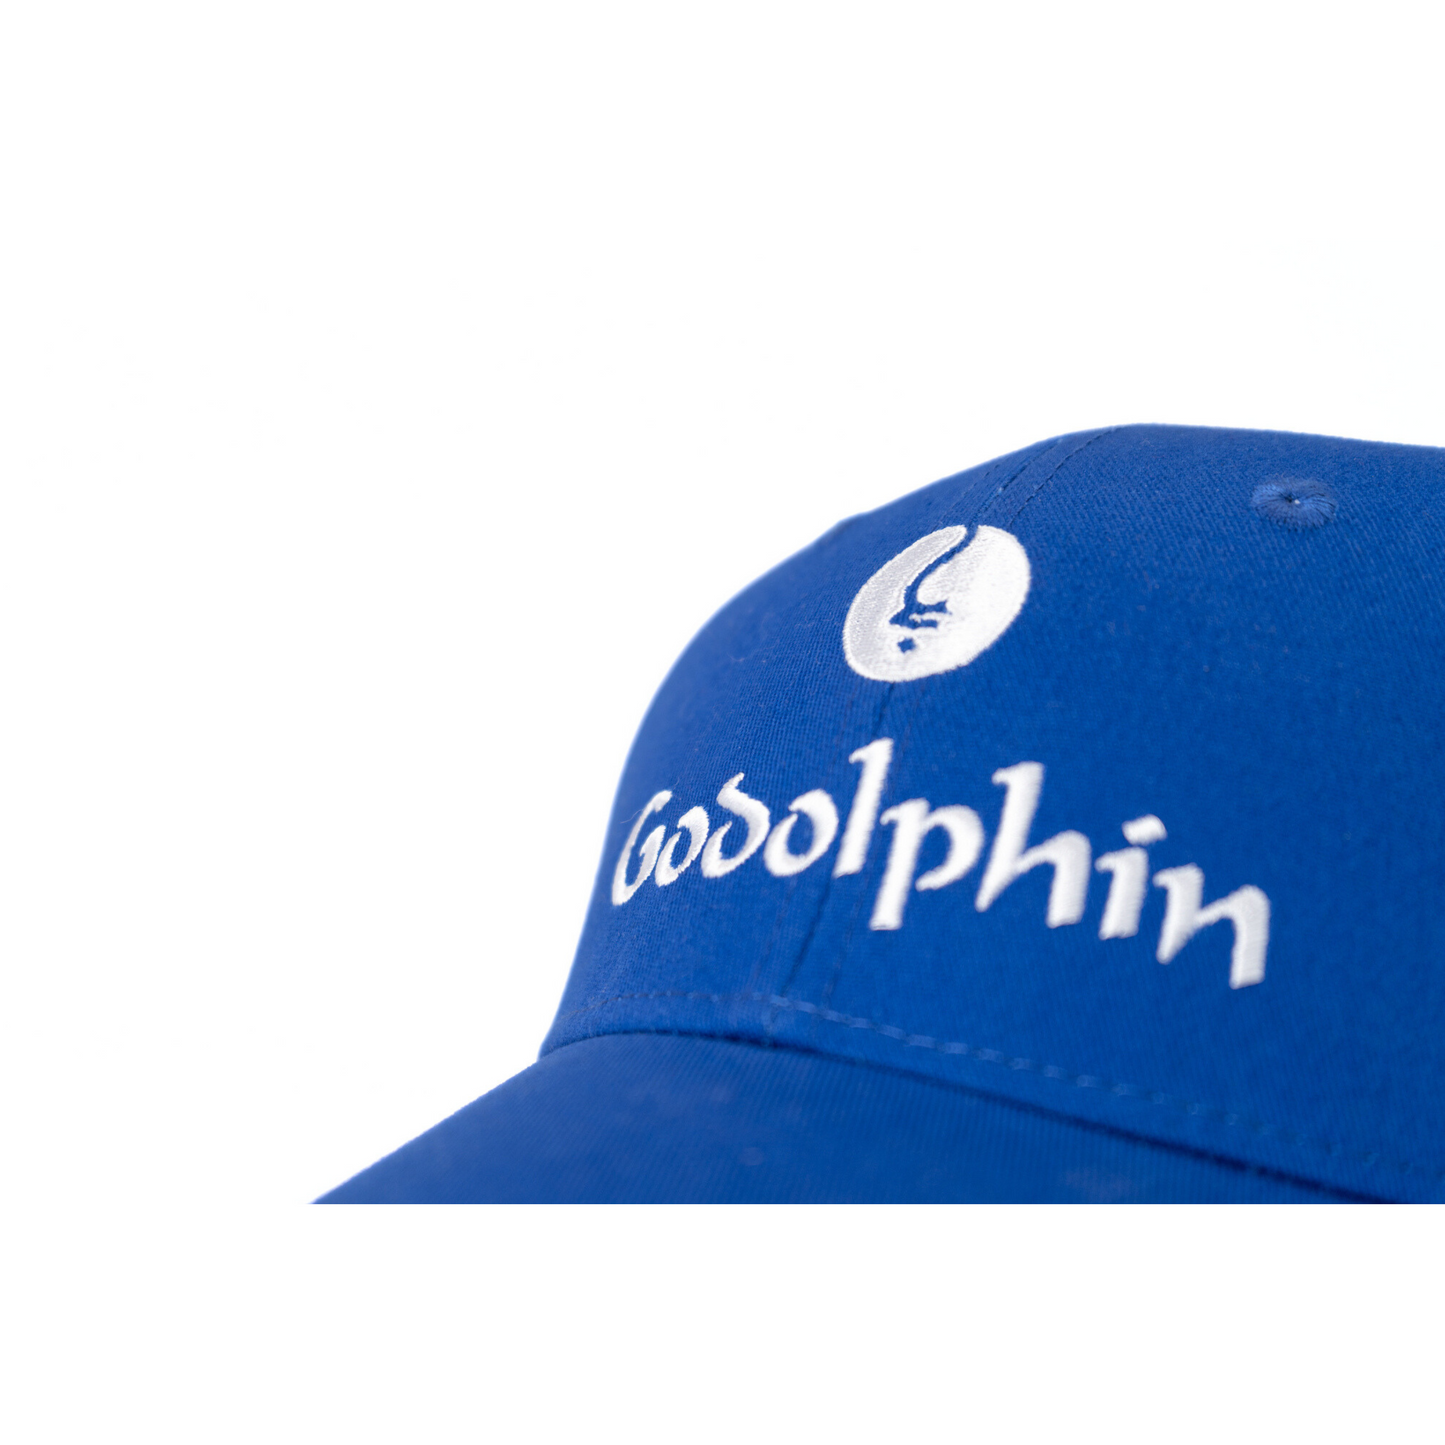 Anamoe Baseball Cap - Godolphin